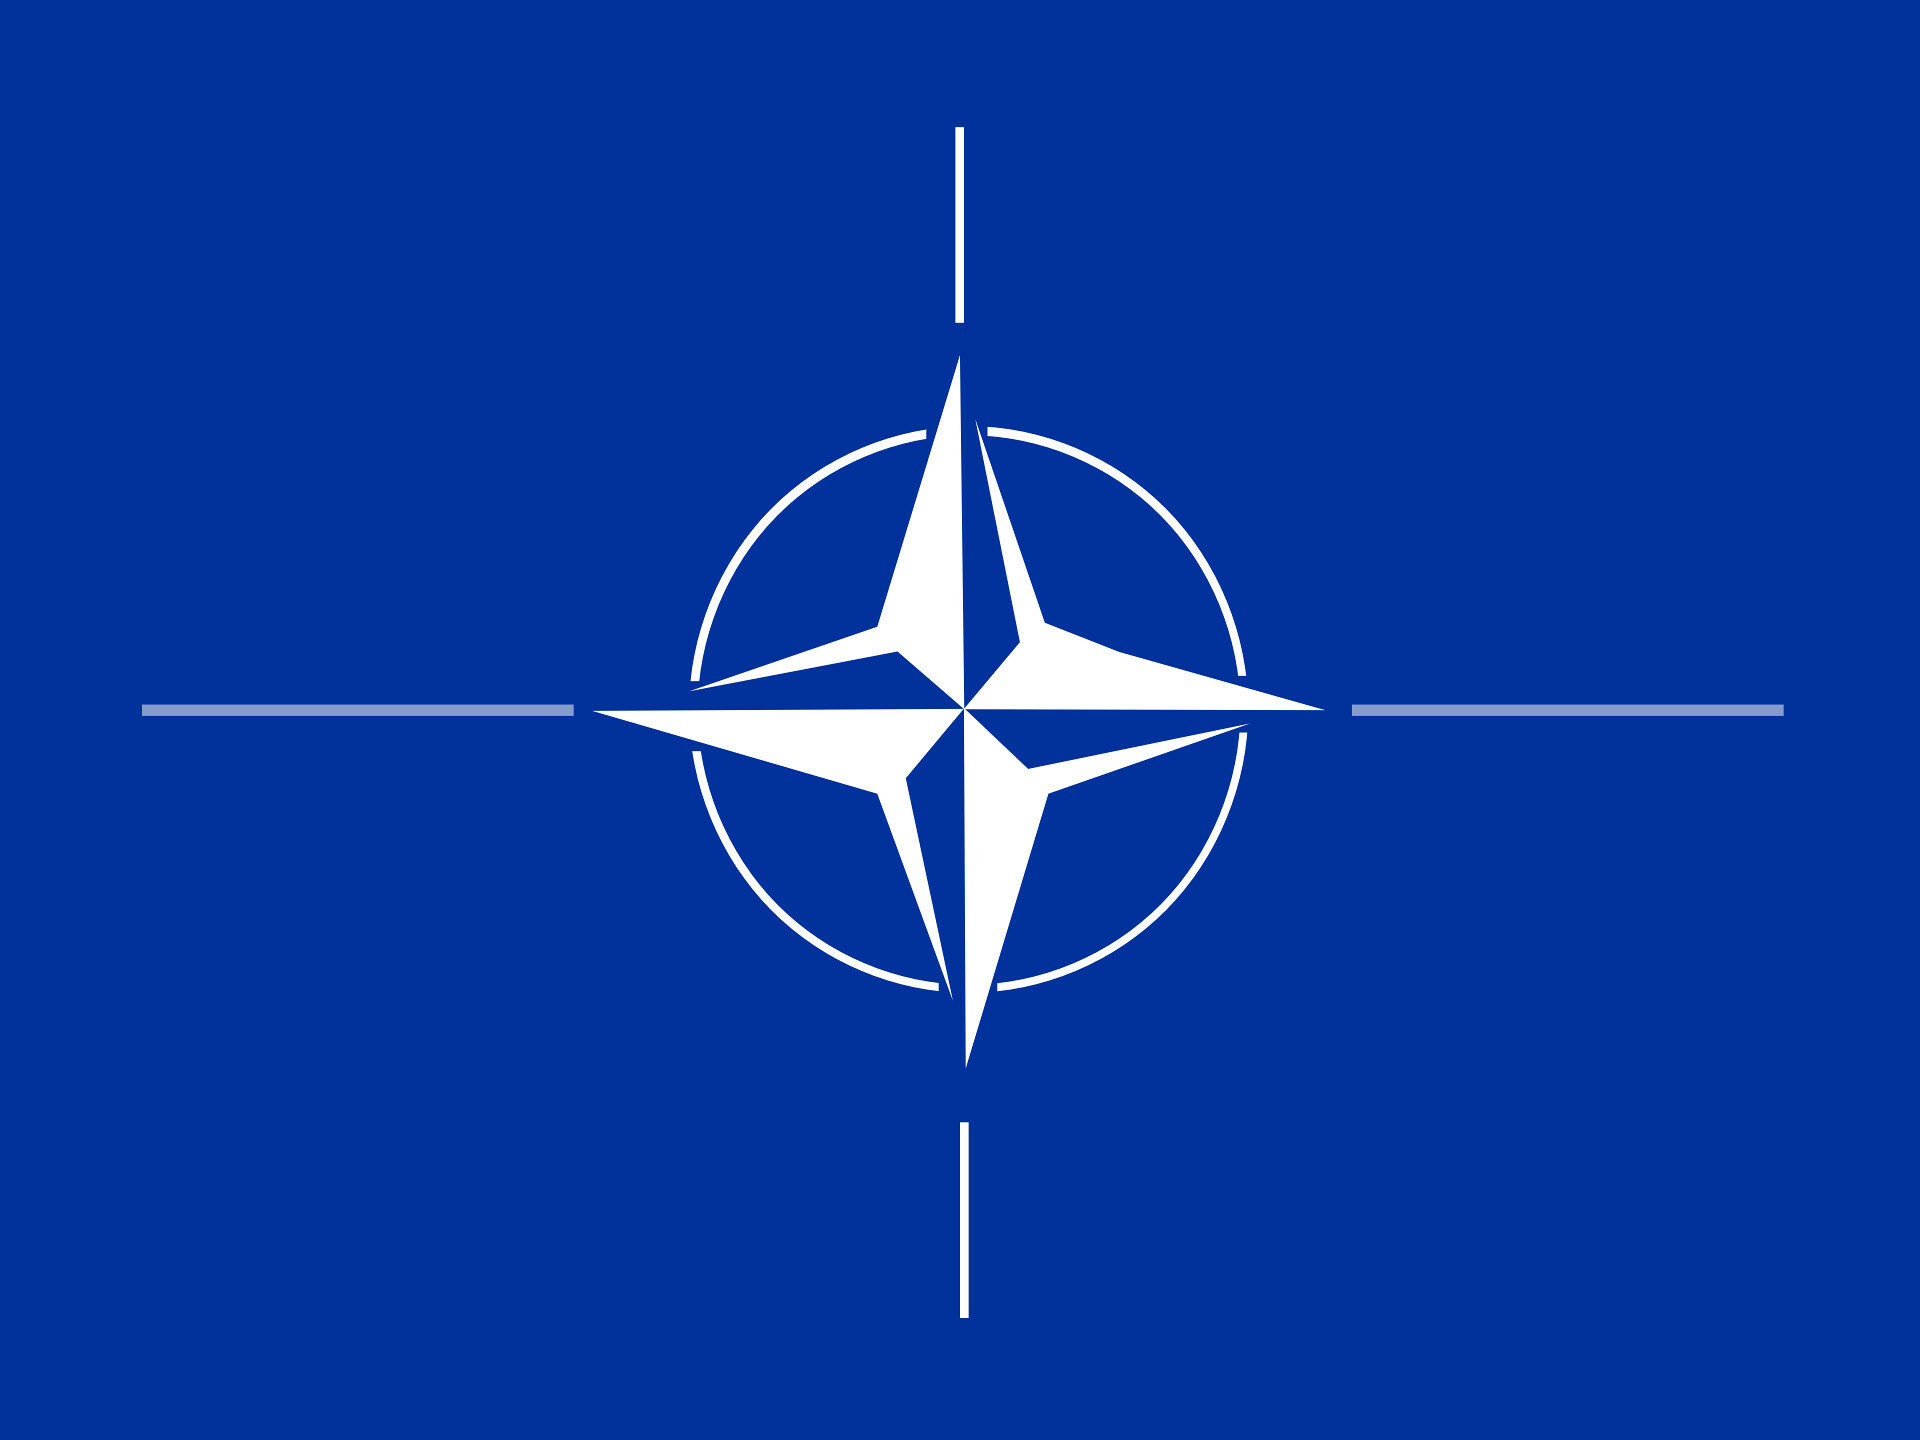 Німеччина про вступ України в НАТО: подальші кроки щодо членства наразі не на порядку денному